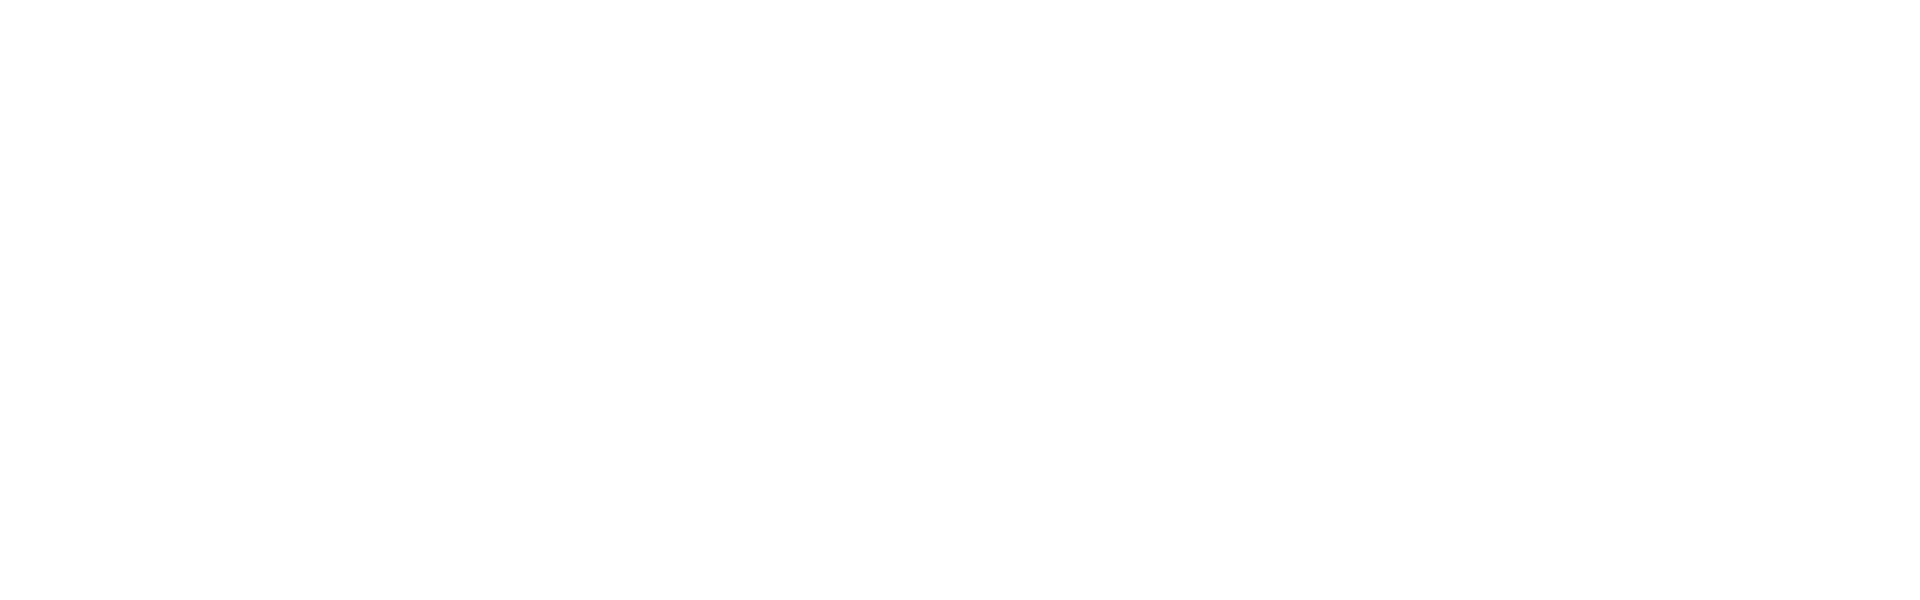 OhmCo carwash marketing logo white